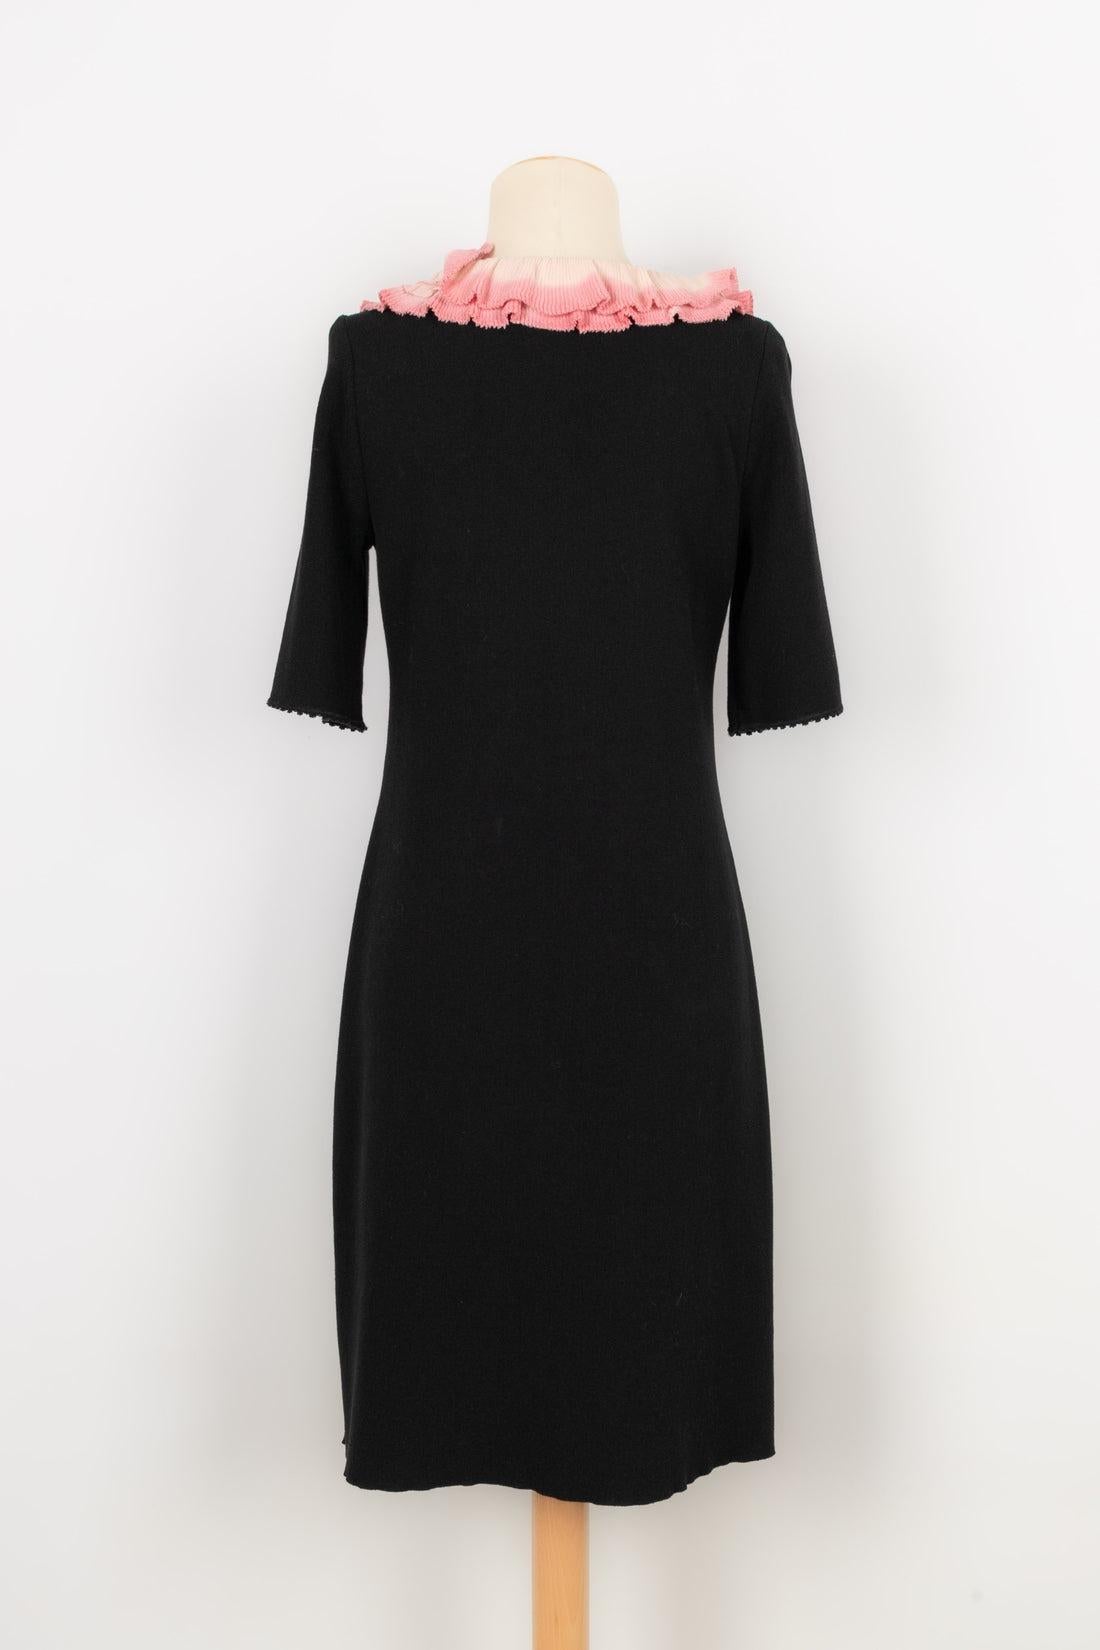 Christian Lacroix Blended Cotton Dress In Excellent Condition For Sale In SAINT-OUEN-SUR-SEINE, FR